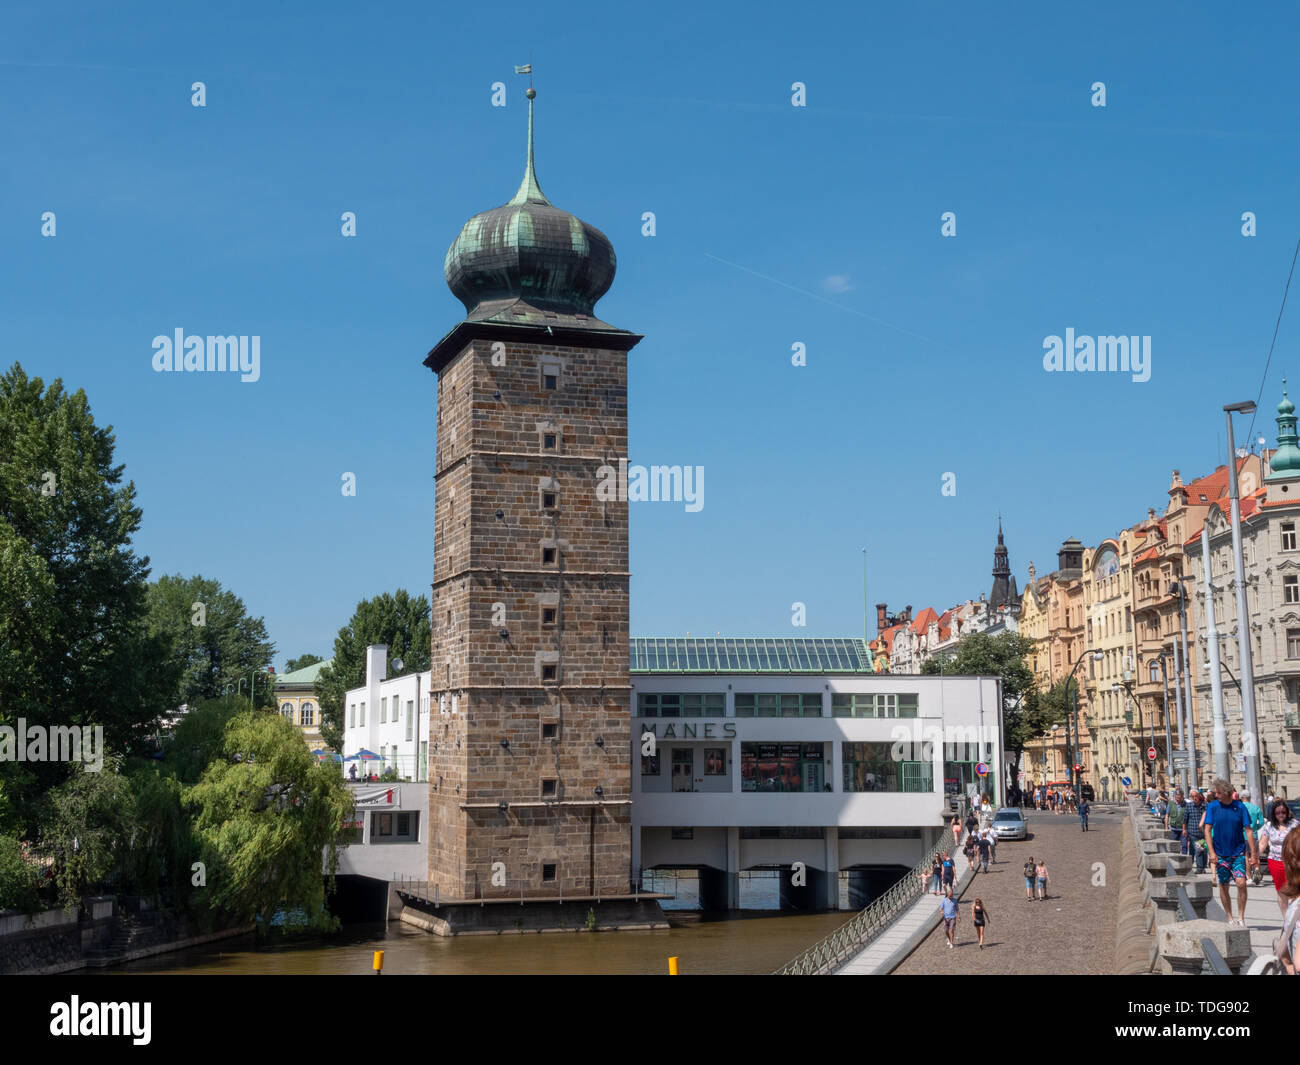 Prag, tschechische Republik - 9. Juni 2019: funktionalistische Manes Galerie an der Moldau. Ein Wahrzeichen der modernen Bauhaus-stil und Funktionalismus. Stockfoto